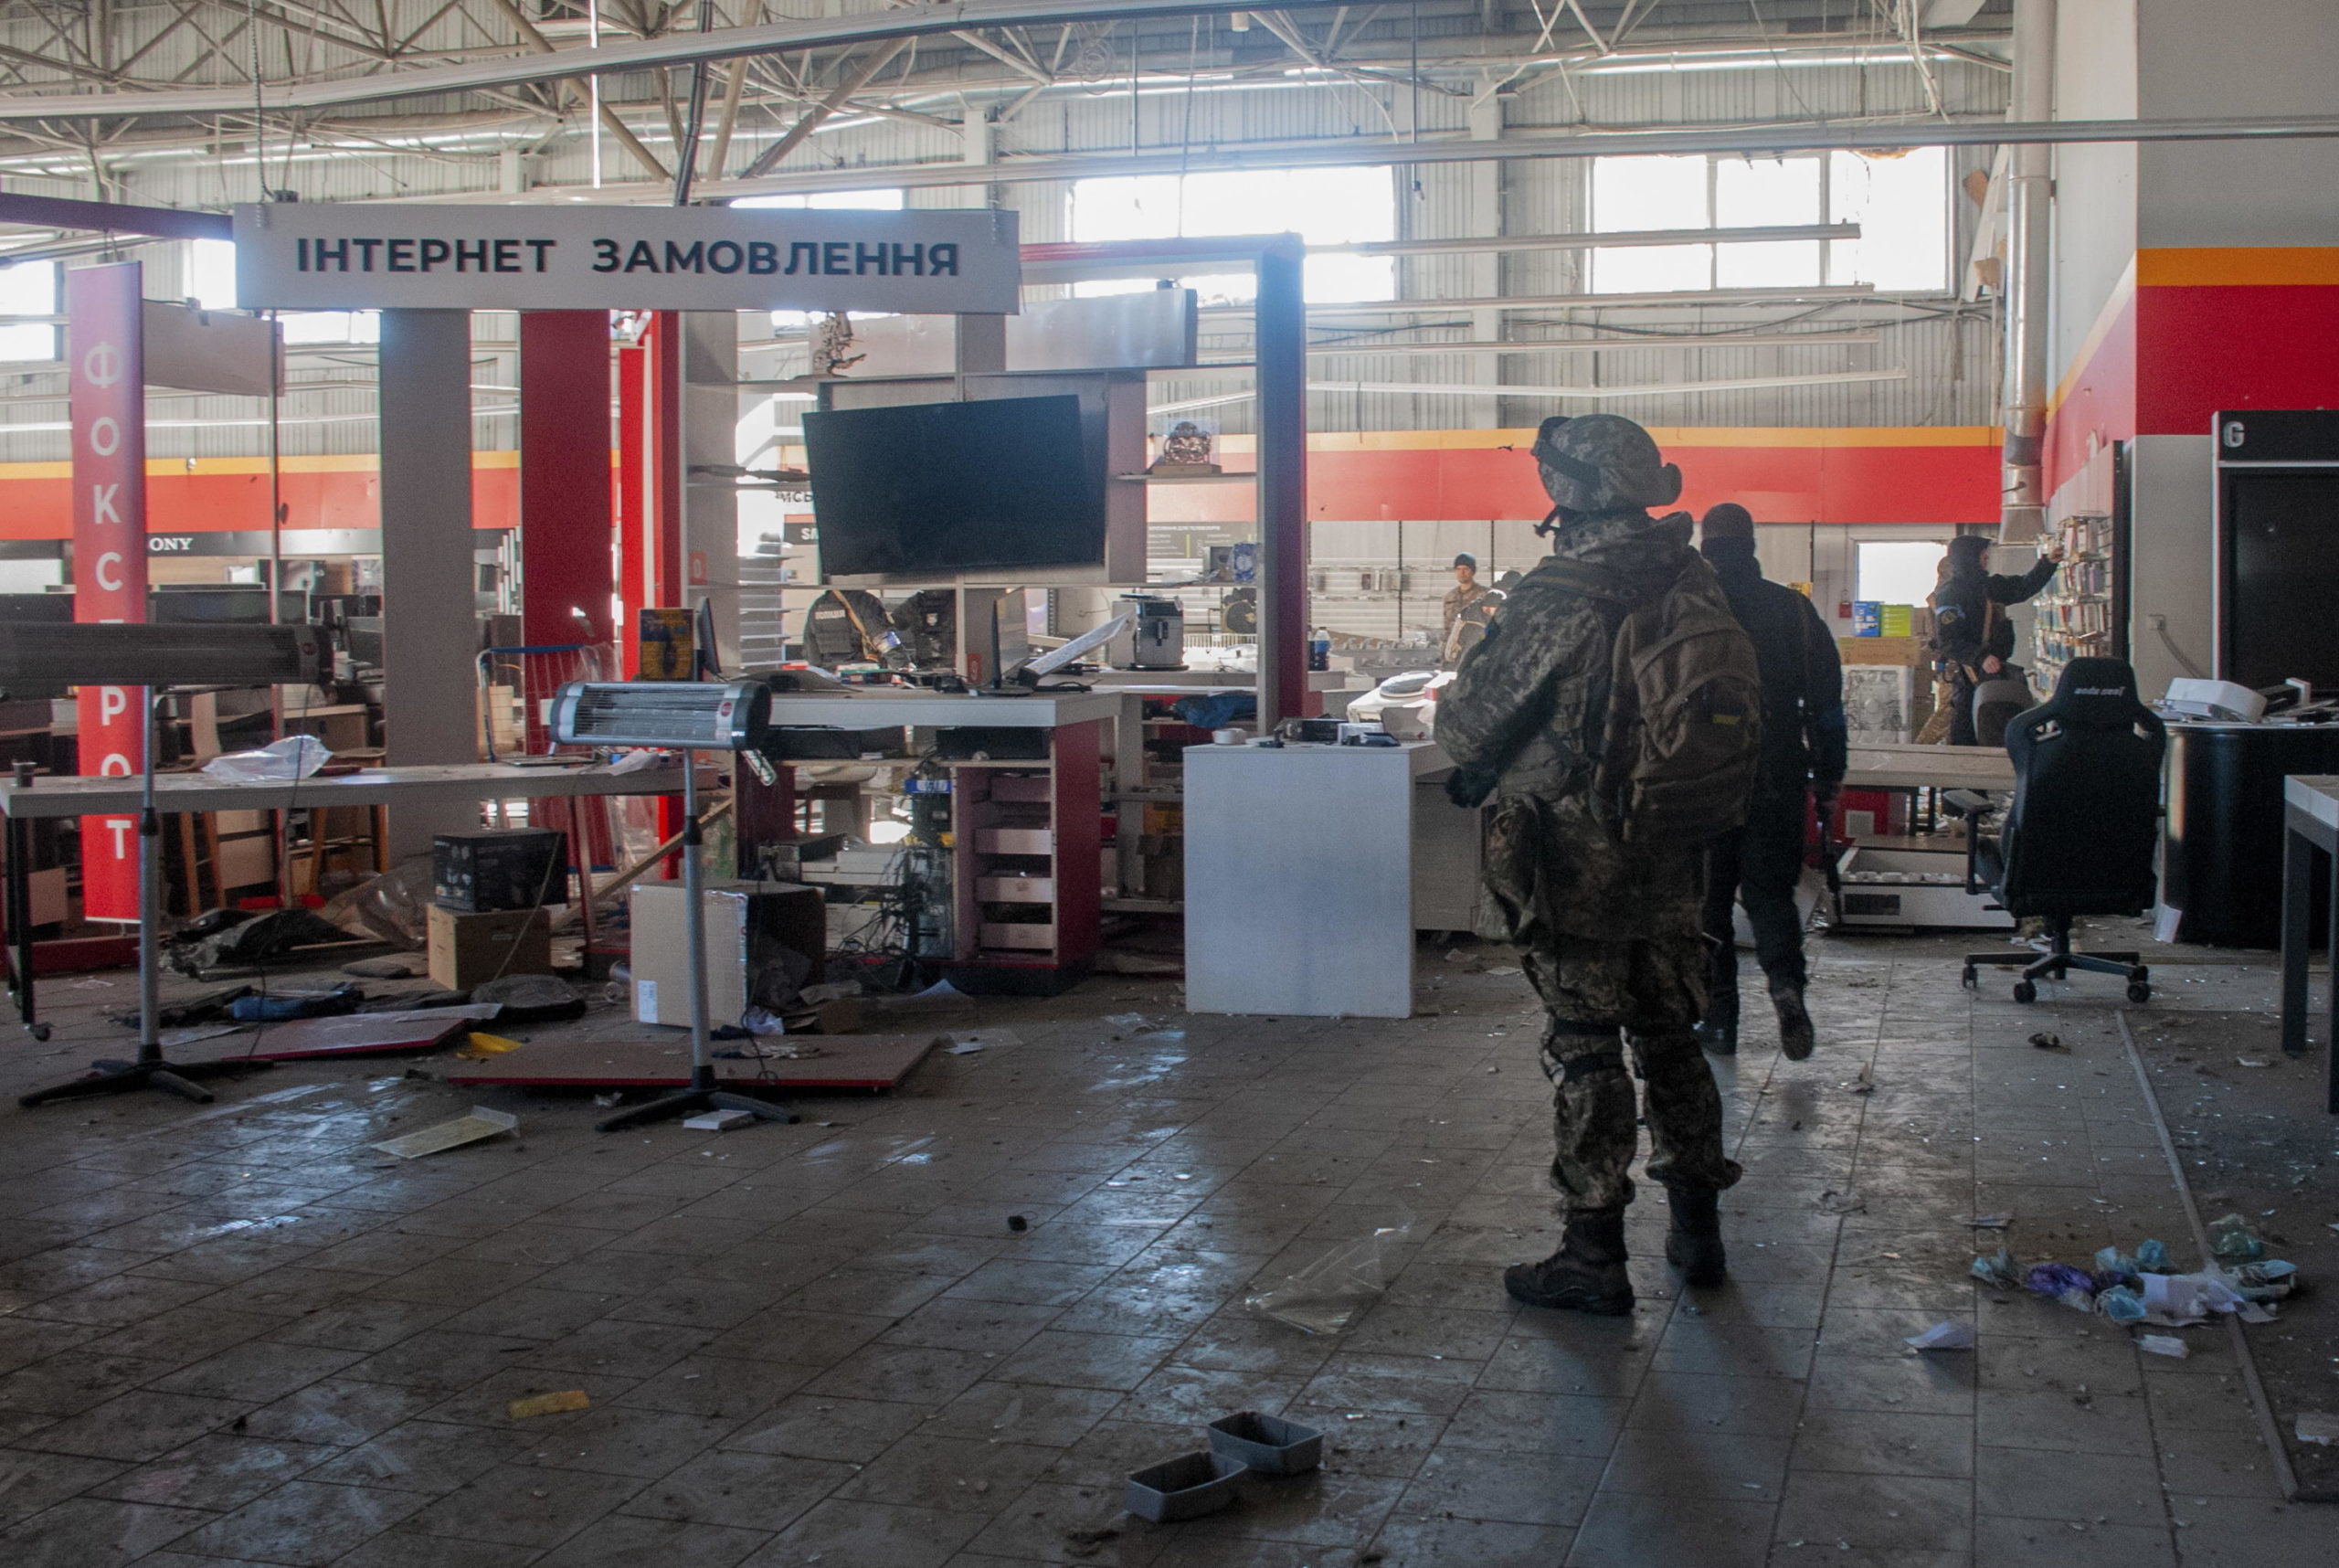 Poliziotti ucraini e militari del Comando di difesa territoriale trasportano merci da un negozio danneggiato per metterle al sicuro dopo i bombardamenti a Kharkiv